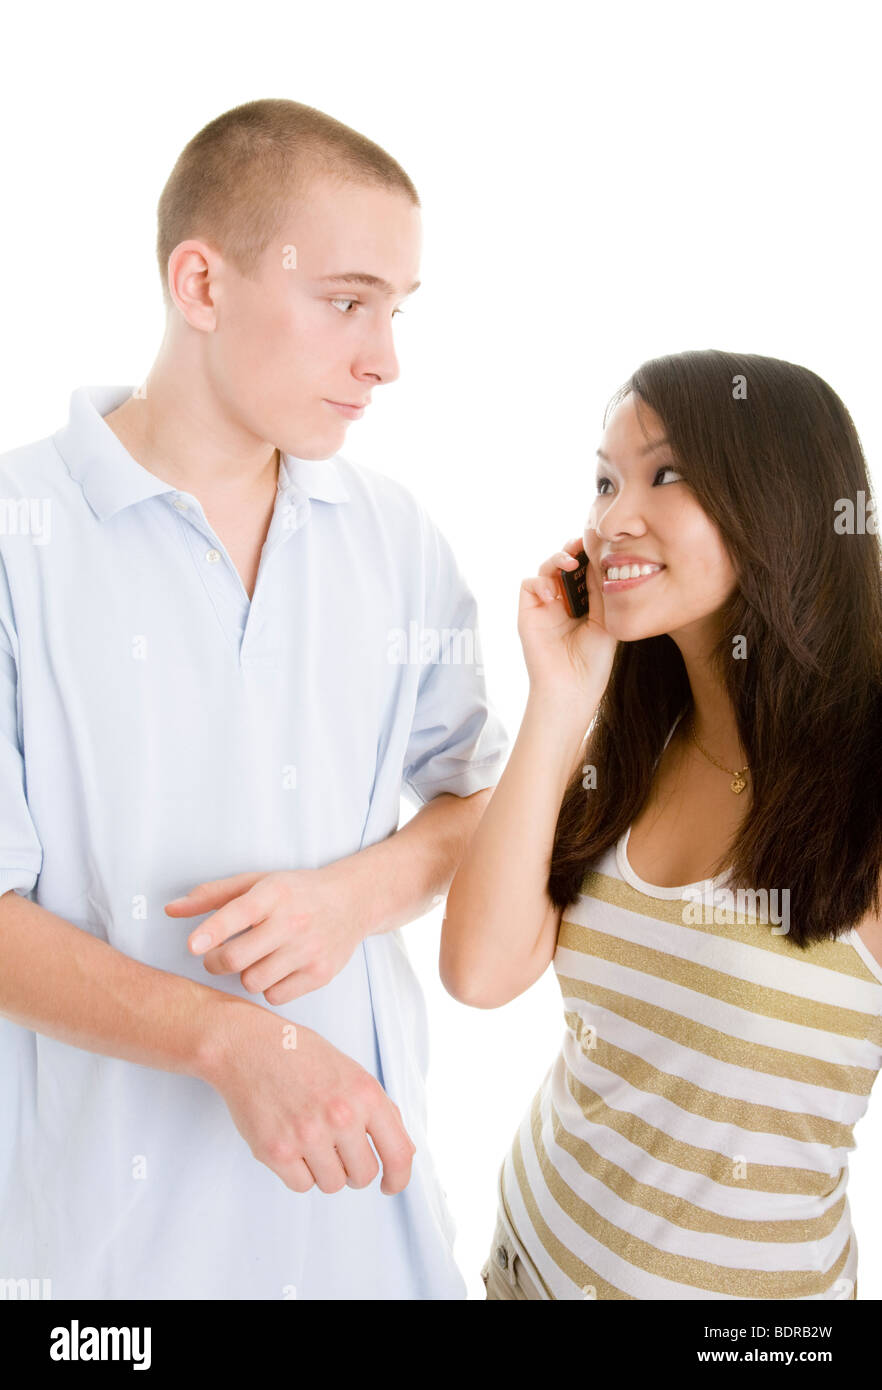 Junger Mann dr ngt seine telefonierende Freundin durch das Zeigen auf eine imagin re Armbanduhr zum Aufbruch Stock Photo